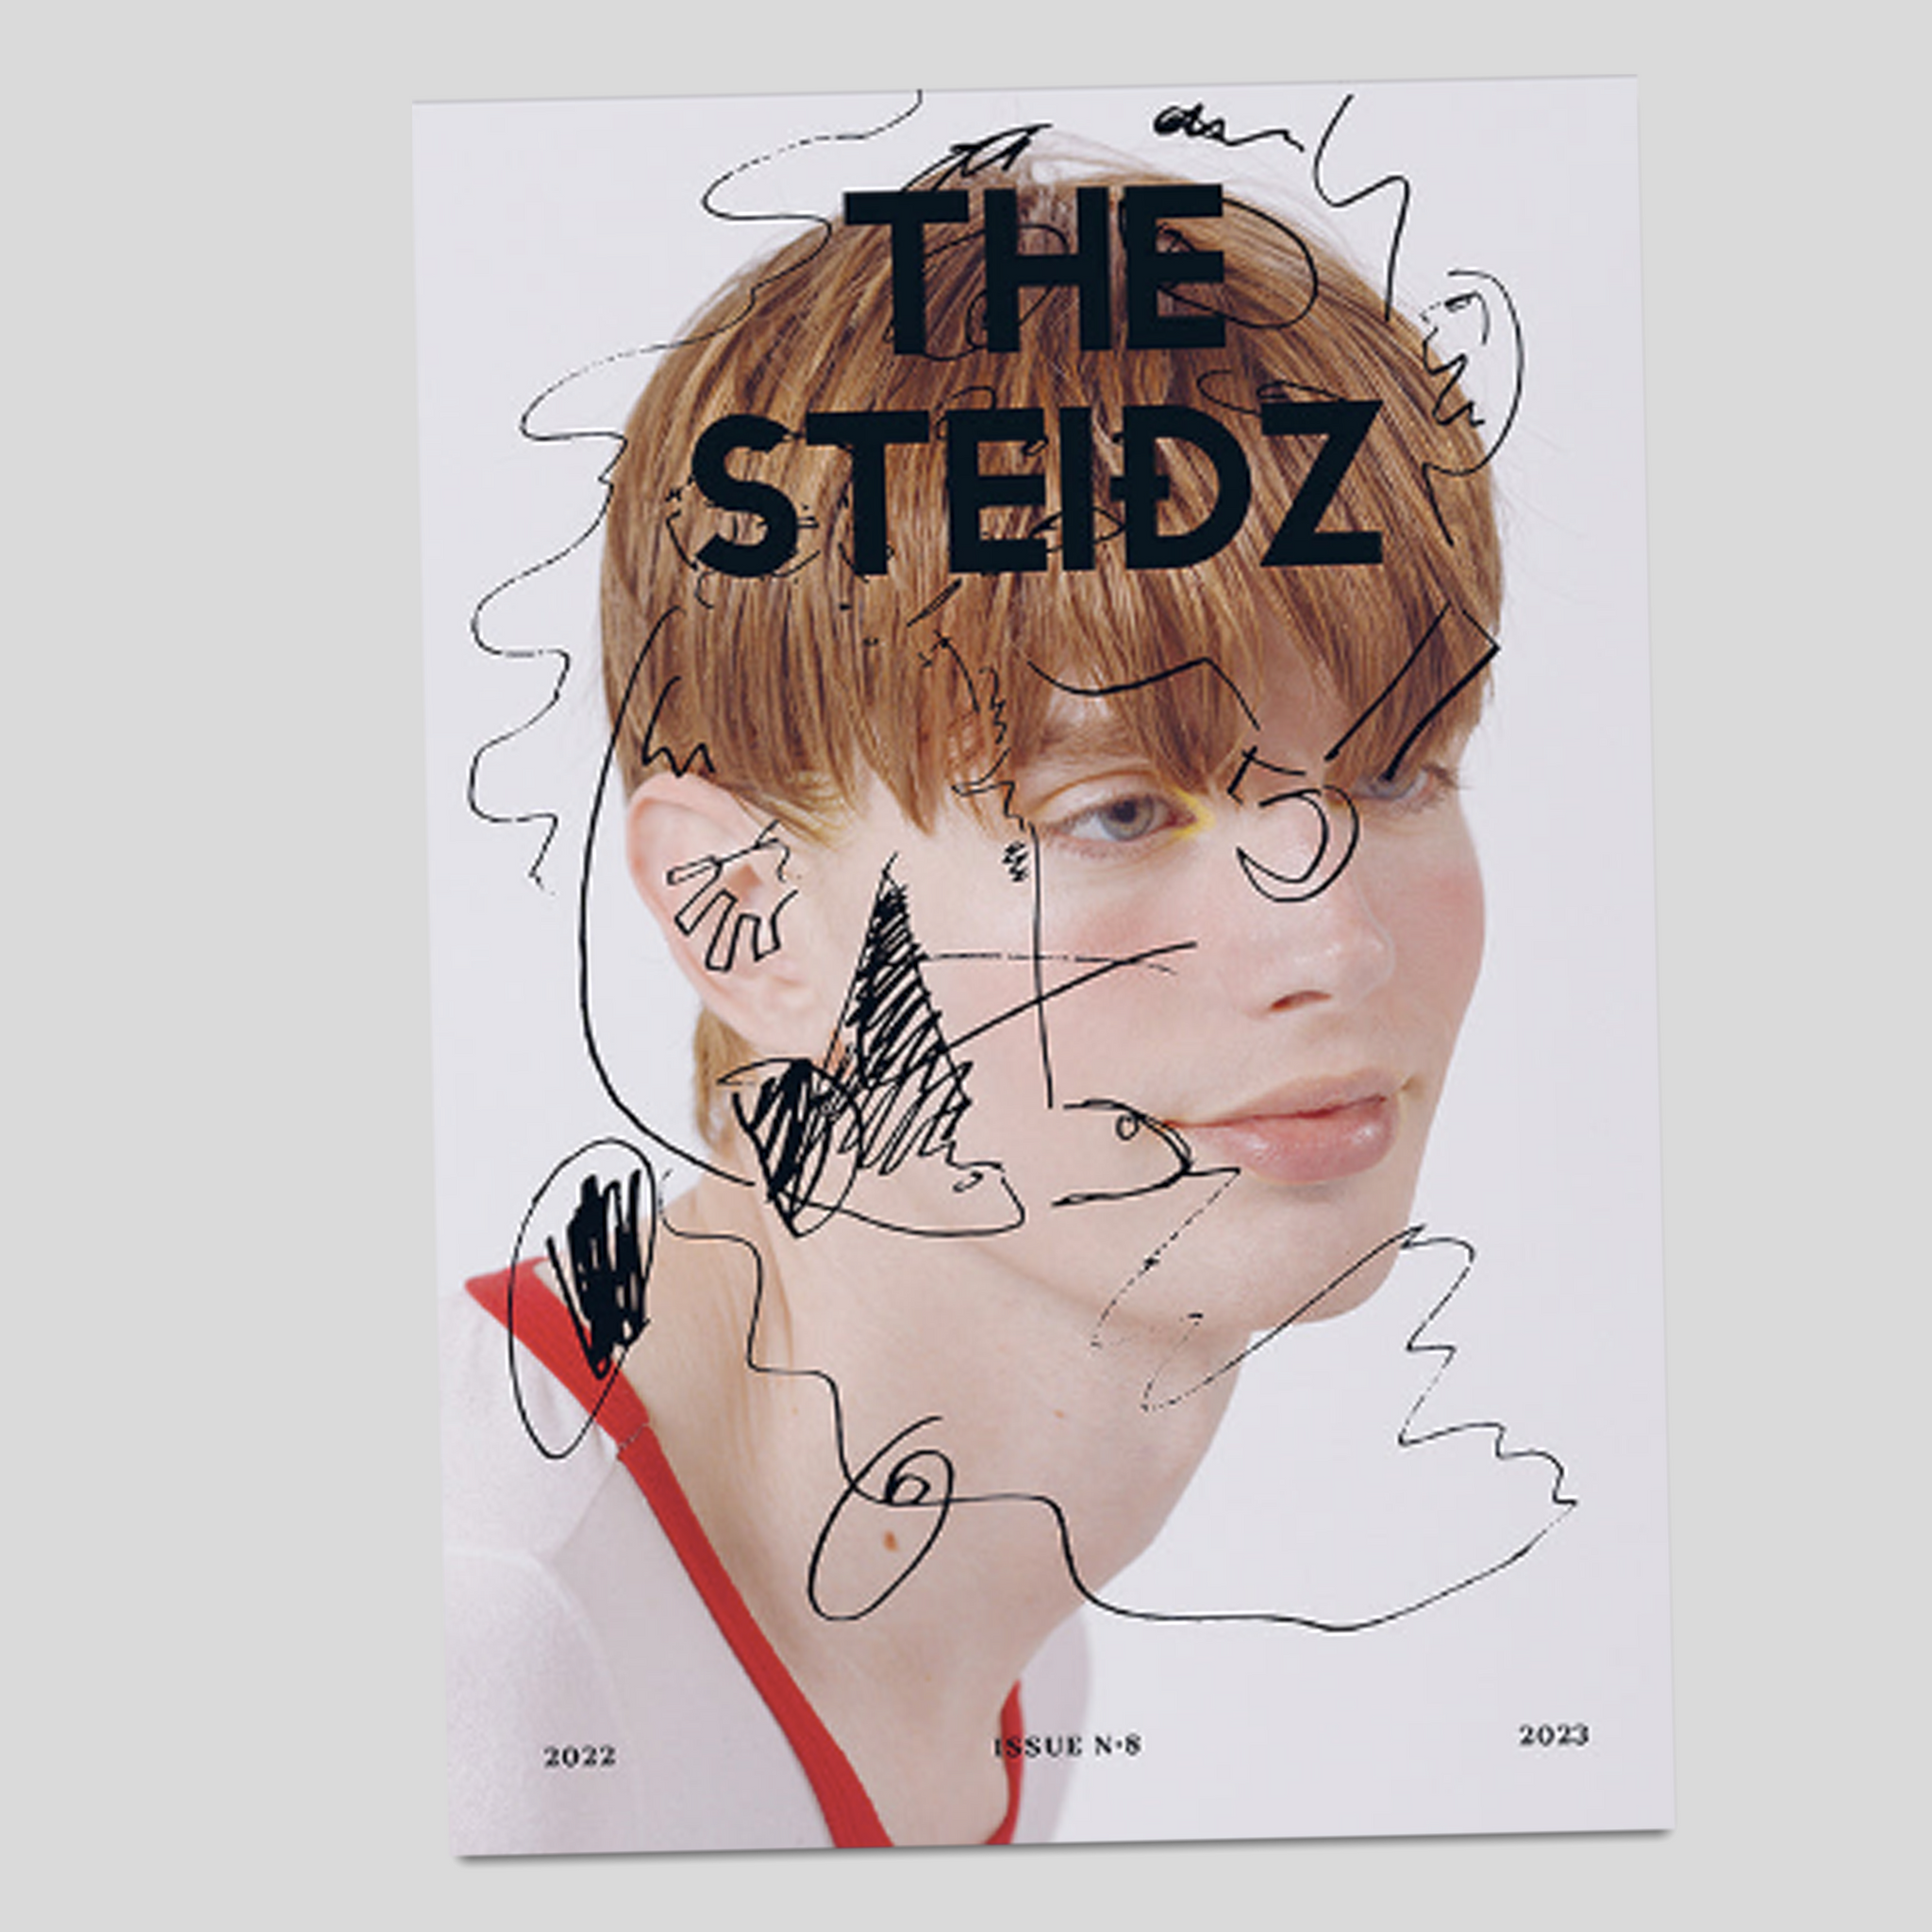 The Steidz #8